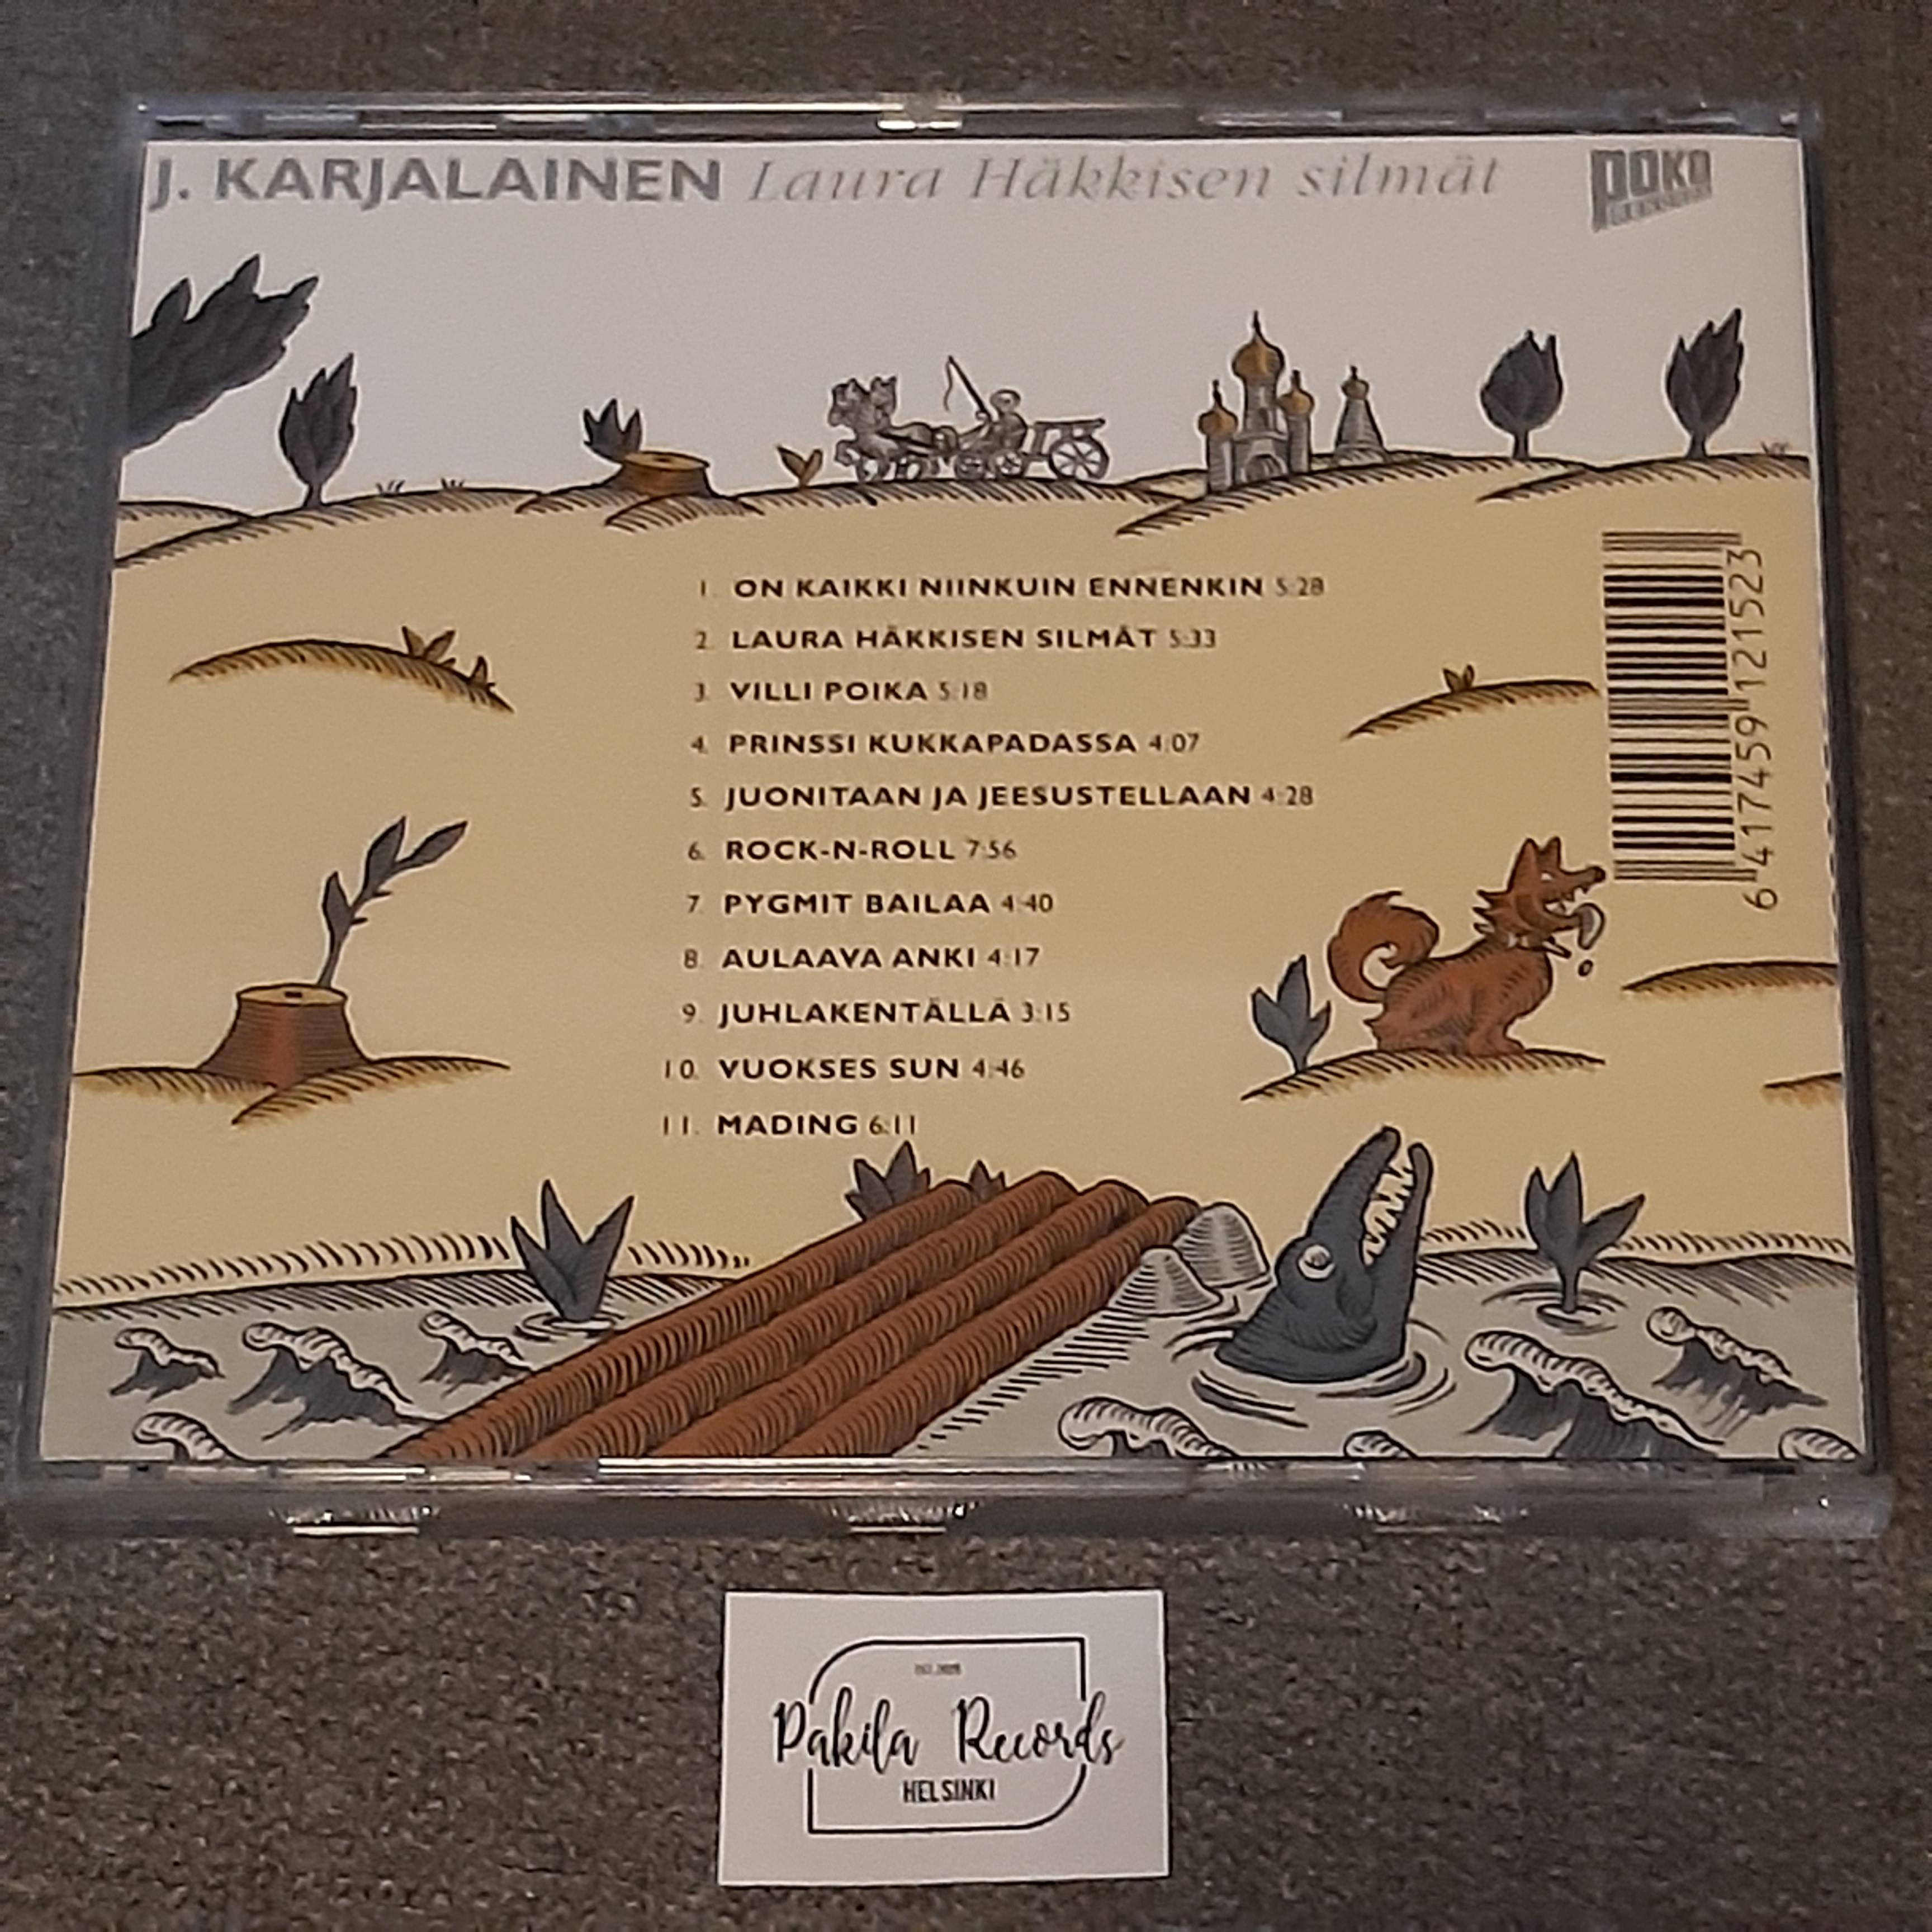 J. Karjalainen - Laura Häkkisen silmät - CD (käytetty)